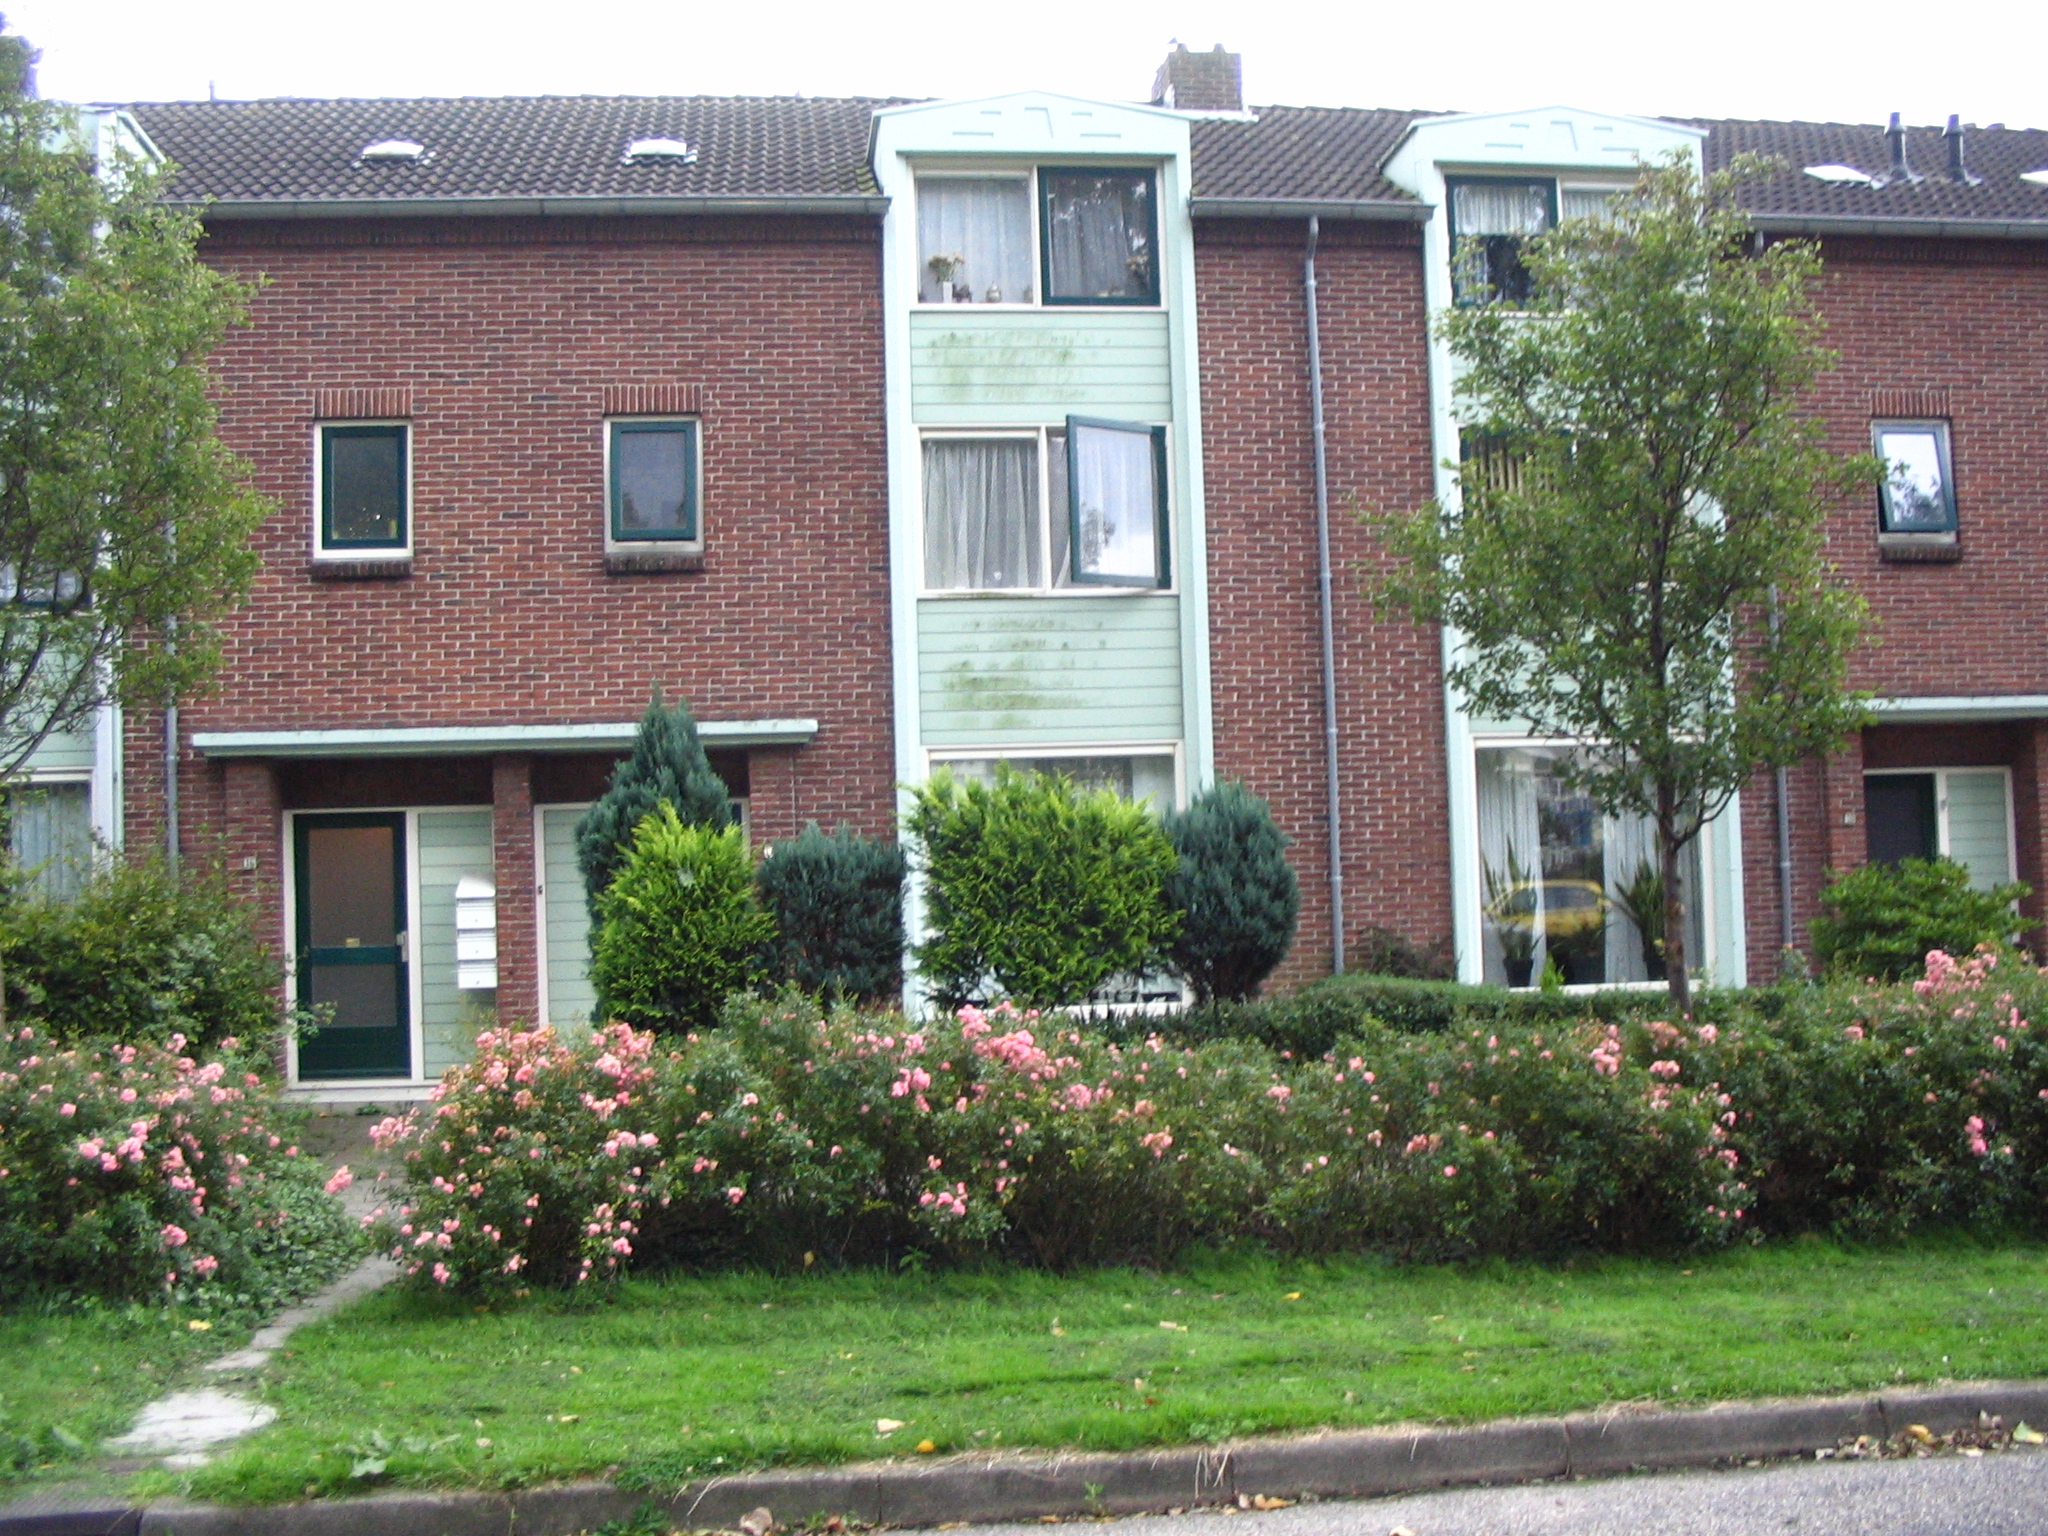 Burgemeester Peeklaan 18, 2377 VP Oude Wetering, Nederland